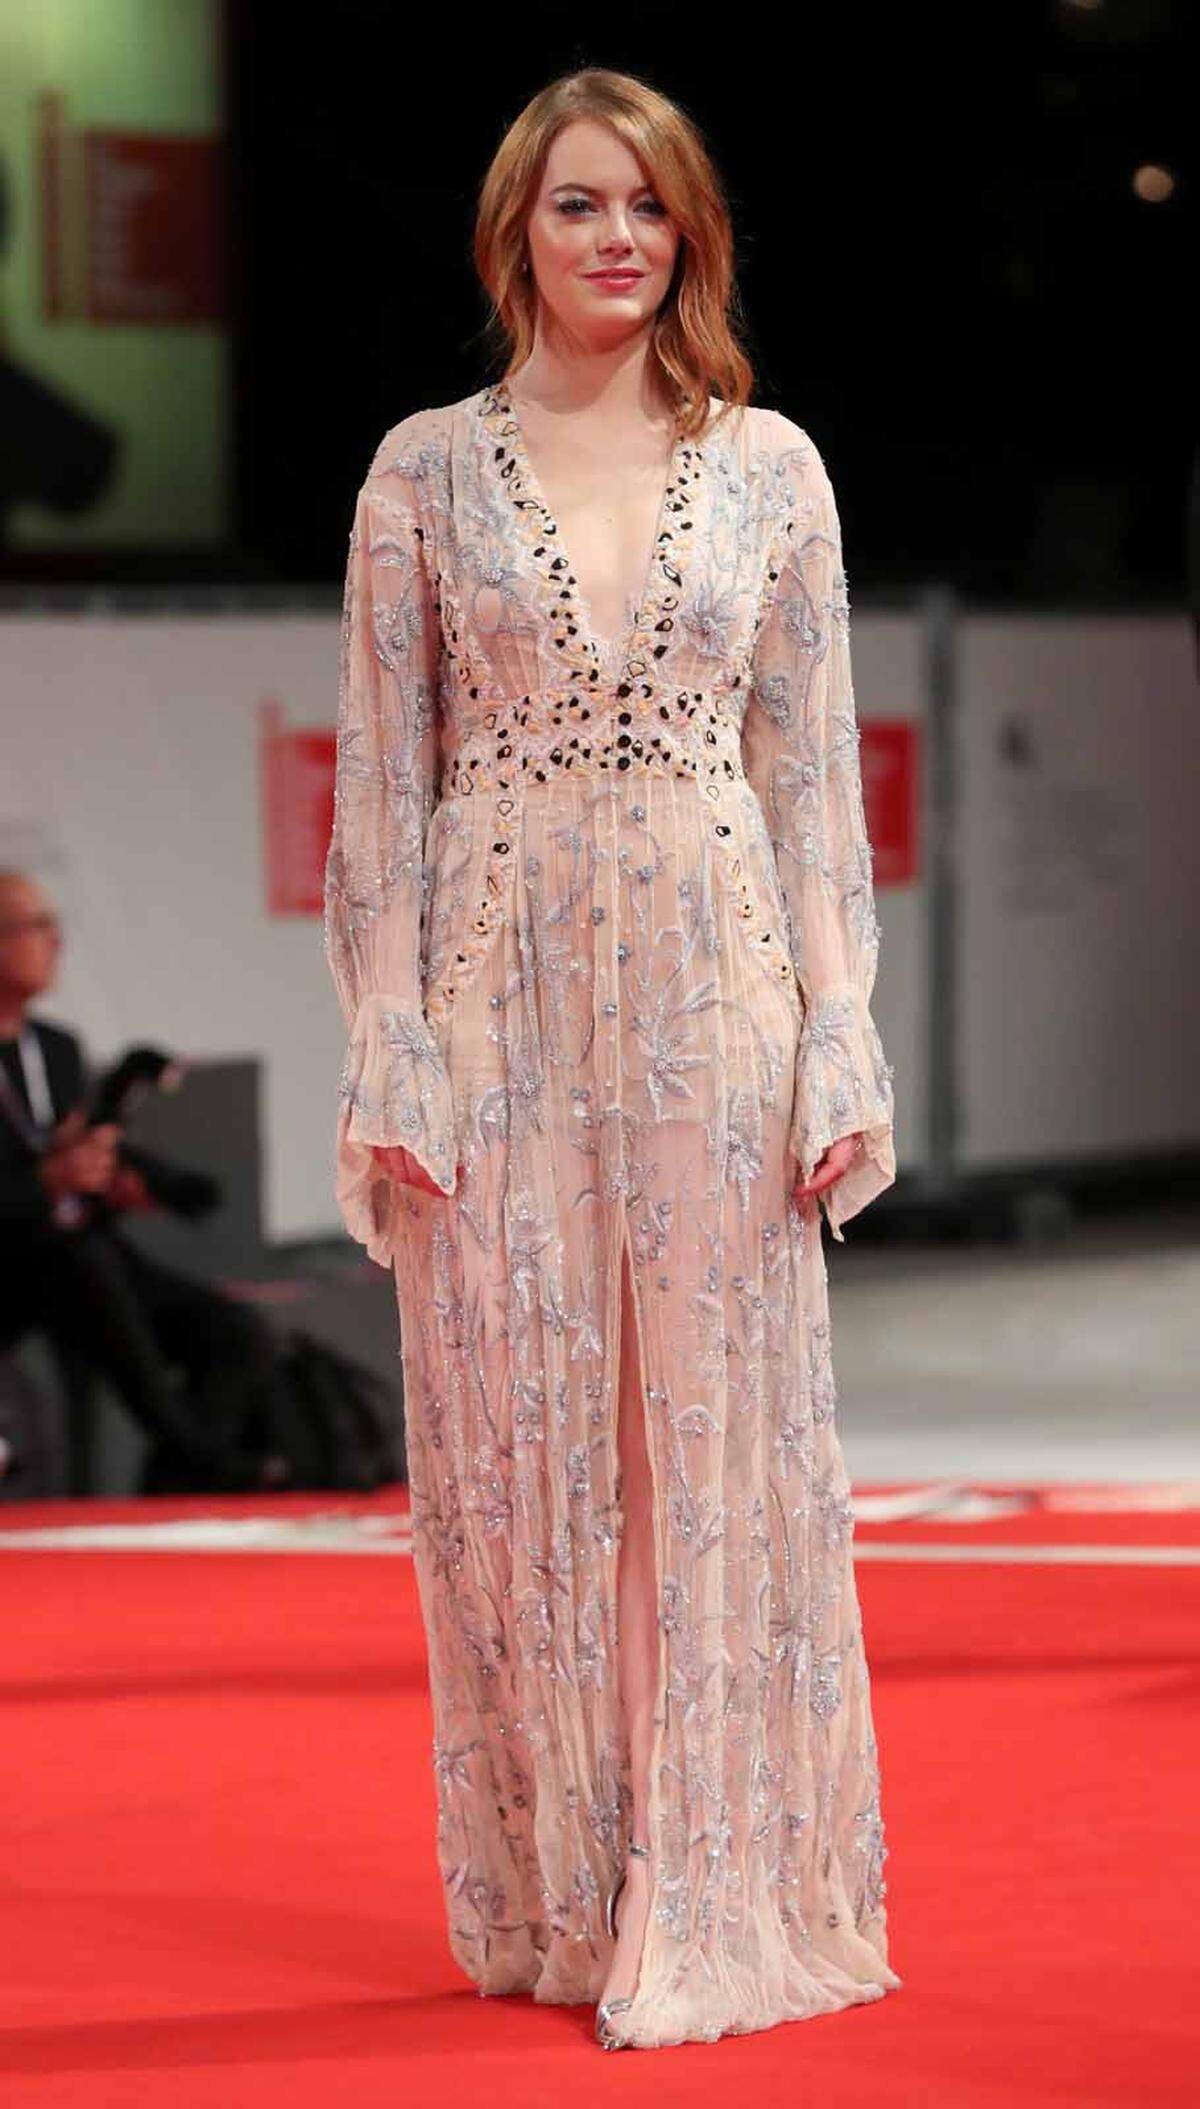 Die Premiere von "The Favourite" bei den Filmfestspielen von Venedig nahm Emma Stone wortwörtlich, am Red Carpet setzte sie sich mit einem romantischen Komplettoutfit (von der Sandale bis zum Schmuck) von Louis Vuitton durch.